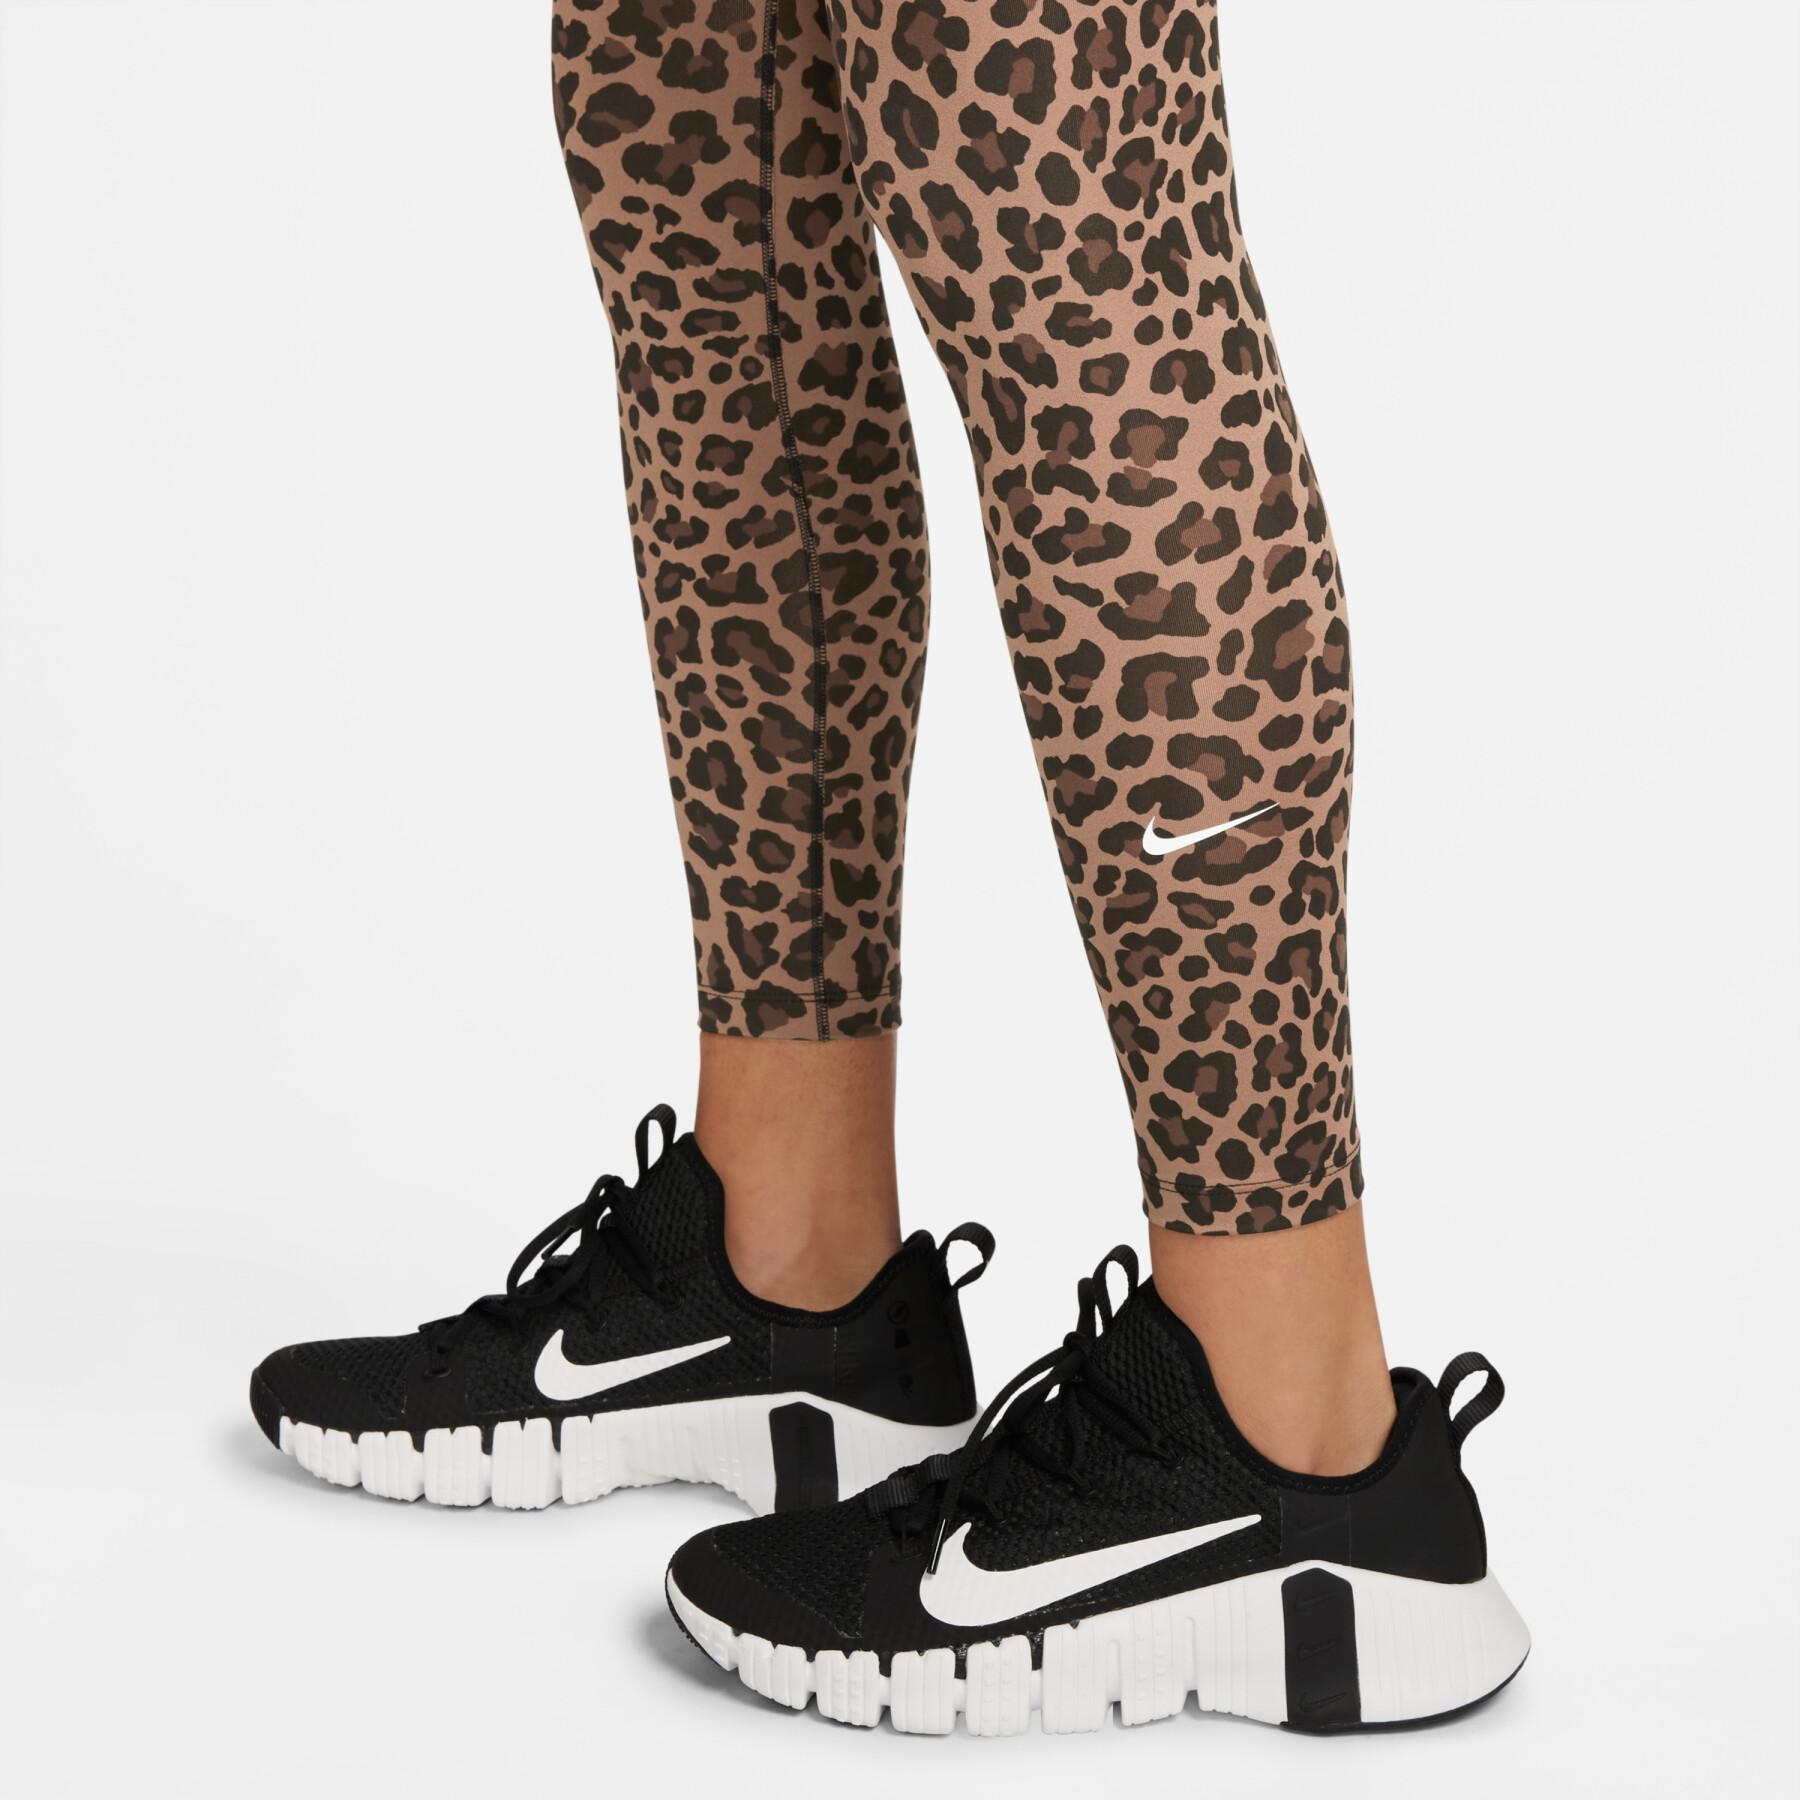 Legging femme Nike One Dri-Fit HR Leopard - Baselayers - Vêtements - Textile